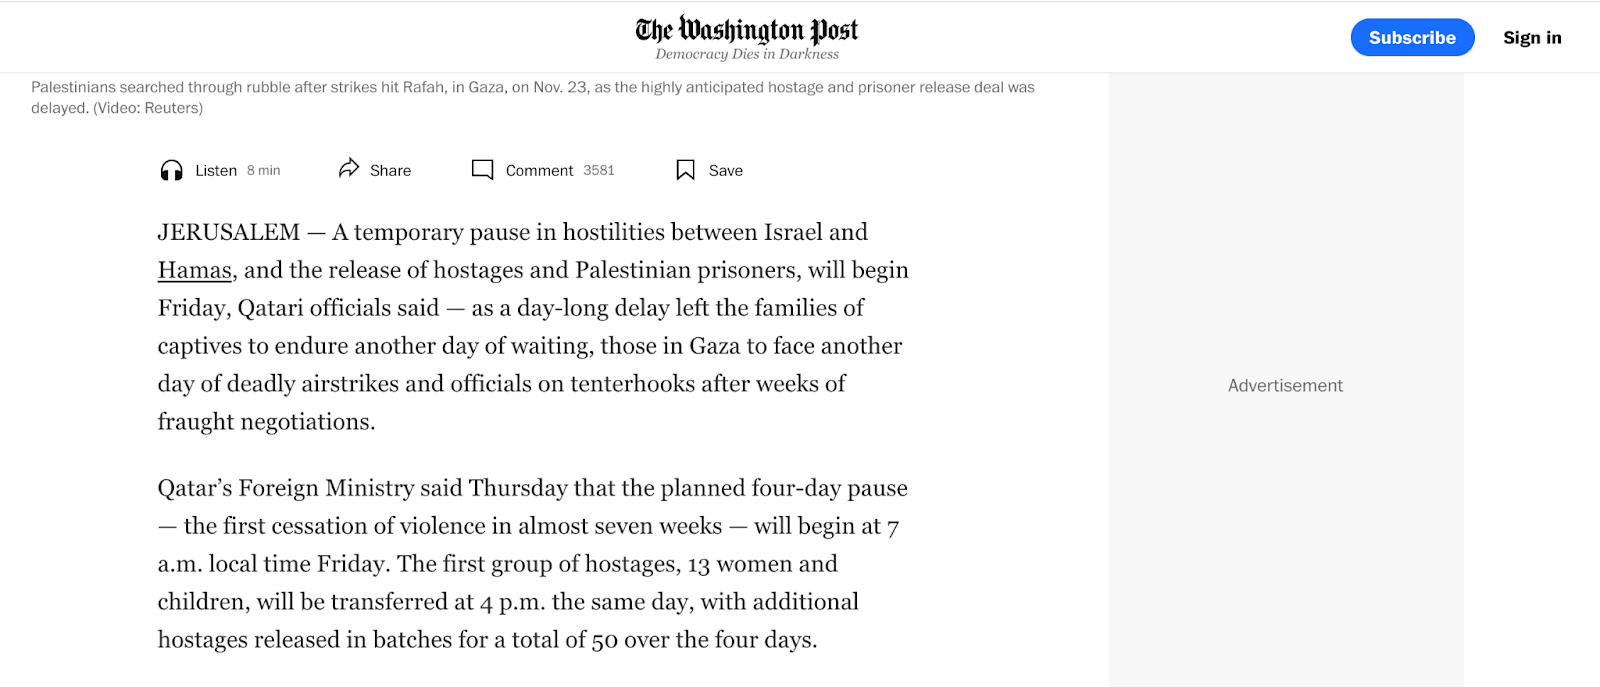 صحيفة ذا واشنطن بوست تركز على الأطفال والنساء الإسرائيليين